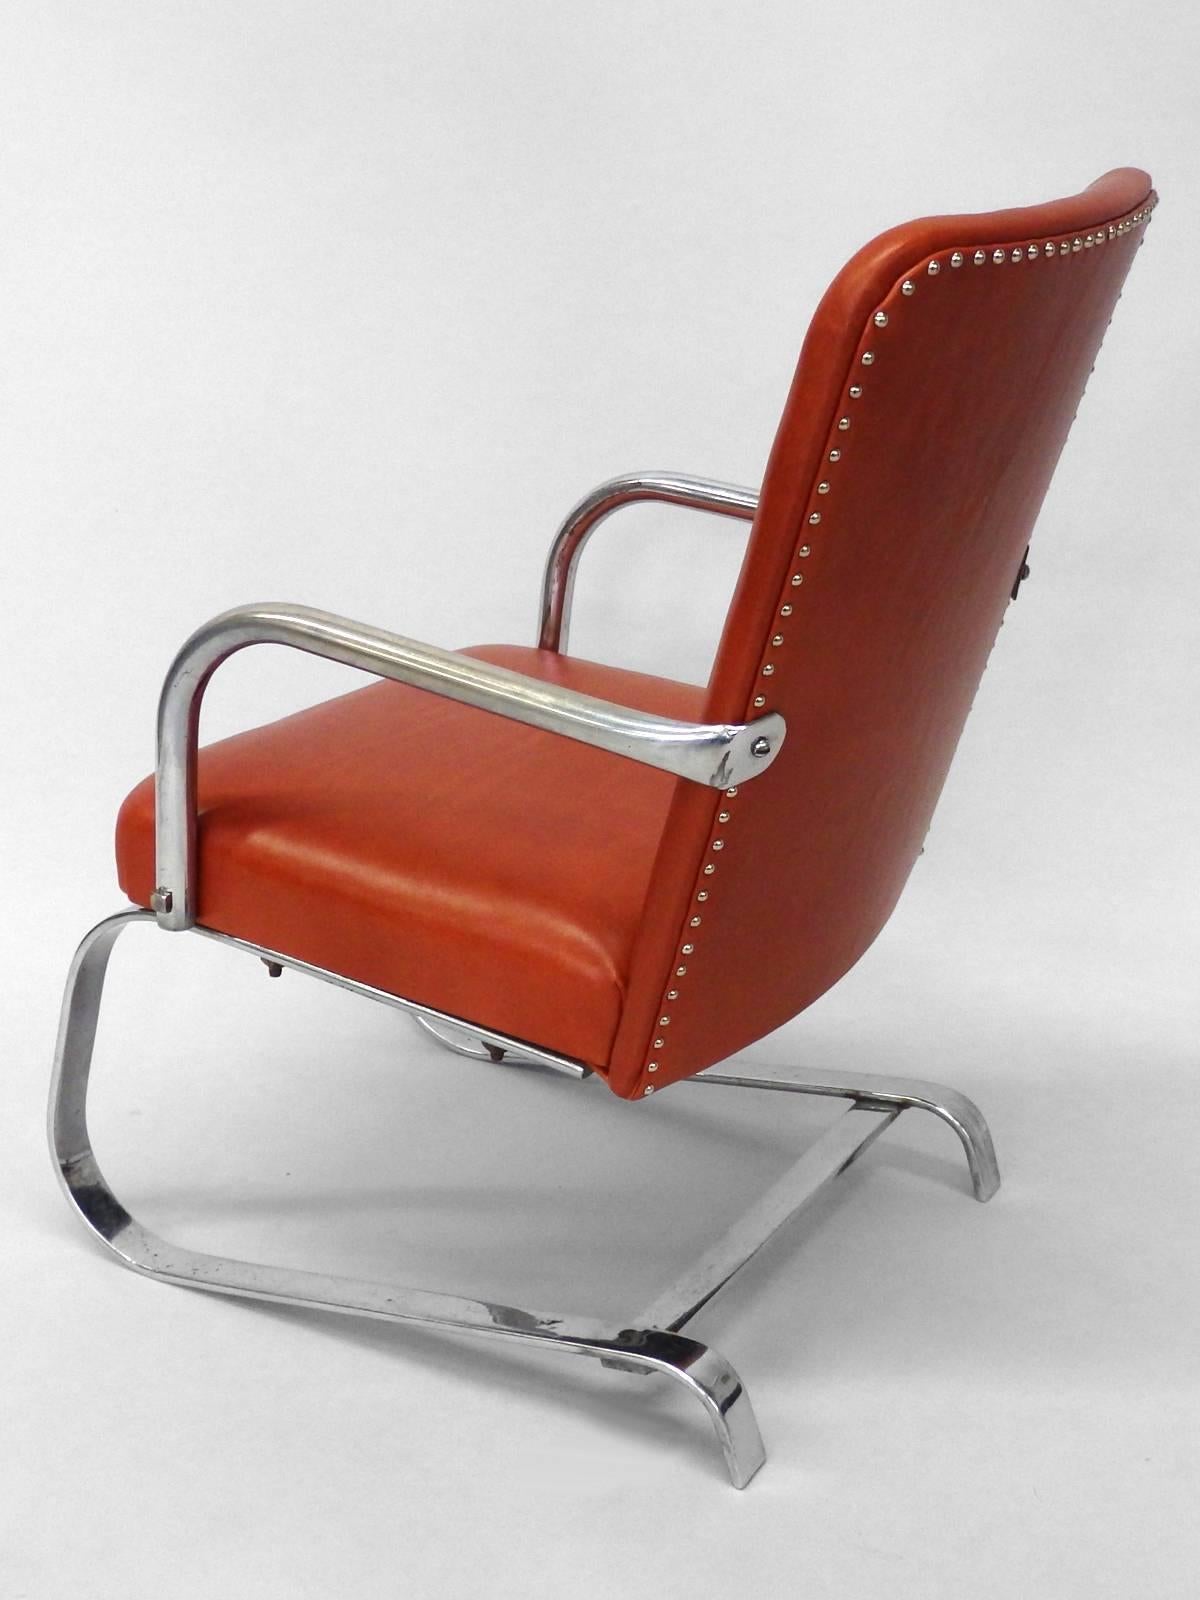 Échantillon de vendeur de l'ère Moderne Art Déco ou chaise d'enfant. Recouvert de cuir souple . Le cadre chromé présente des piqûres mineures. Conserve le label des produits Lloyd.